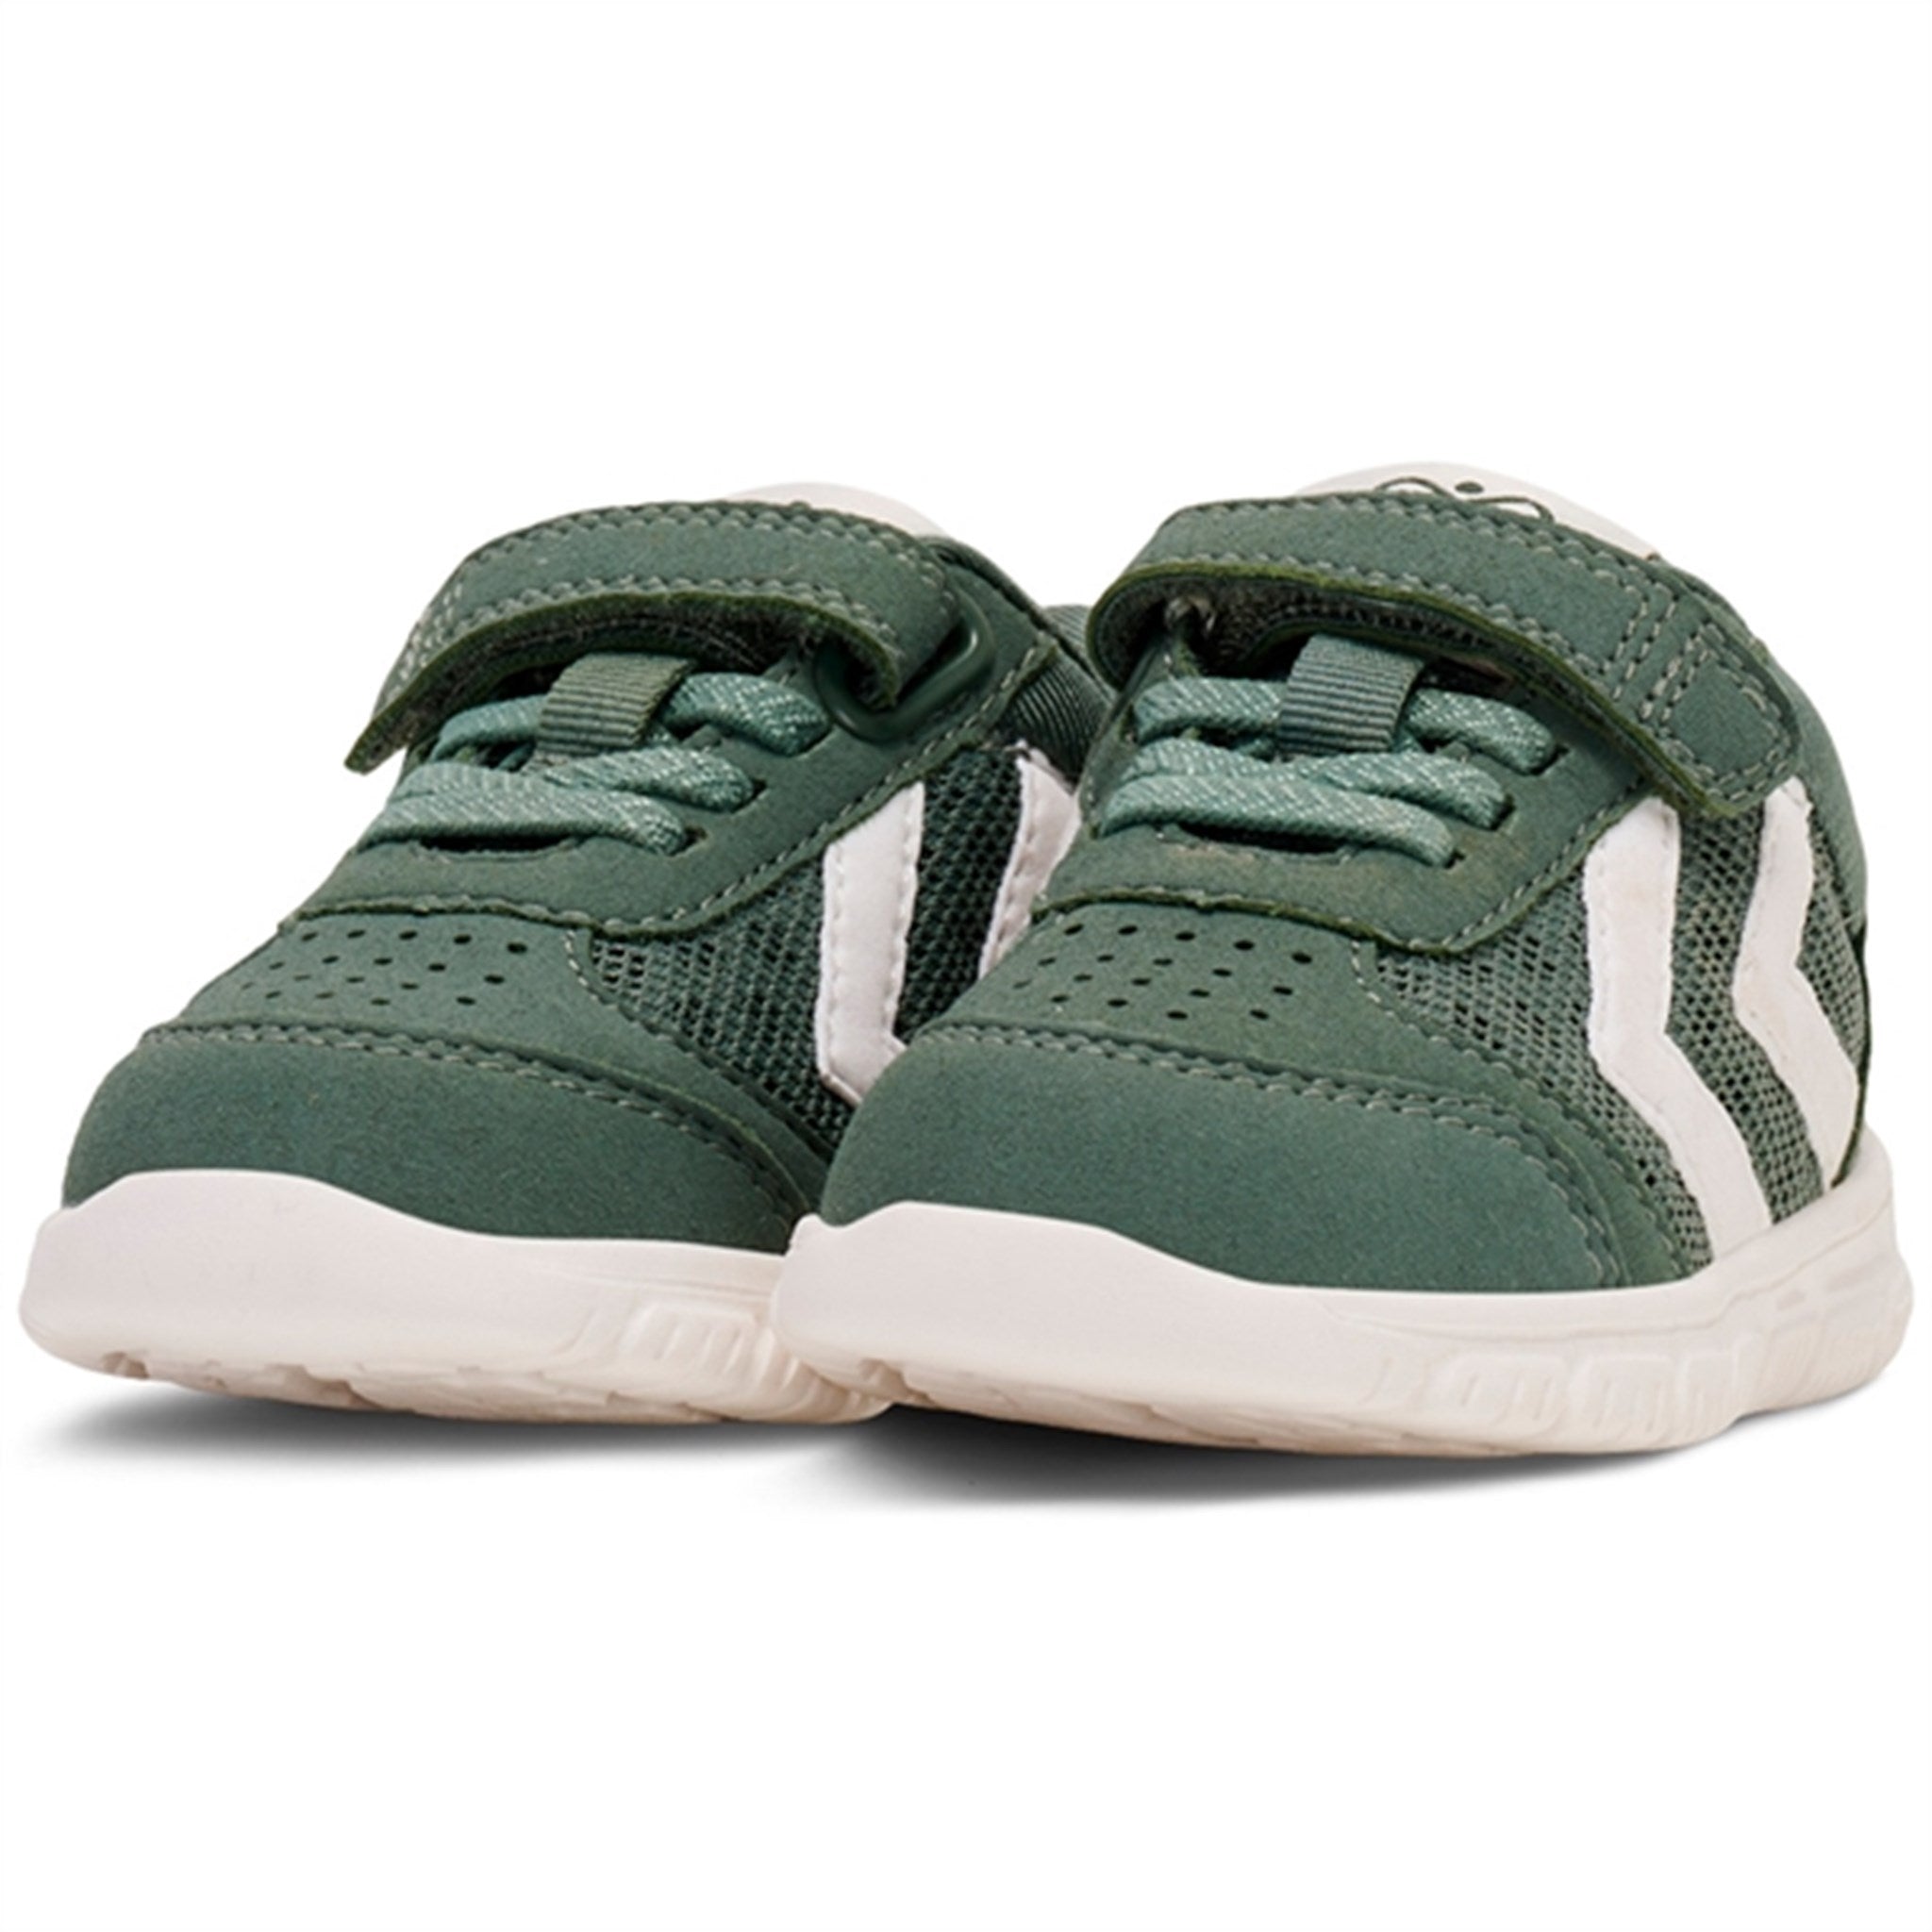 Hummel Crosslite Infant Sneakers Laurel Wreath 7